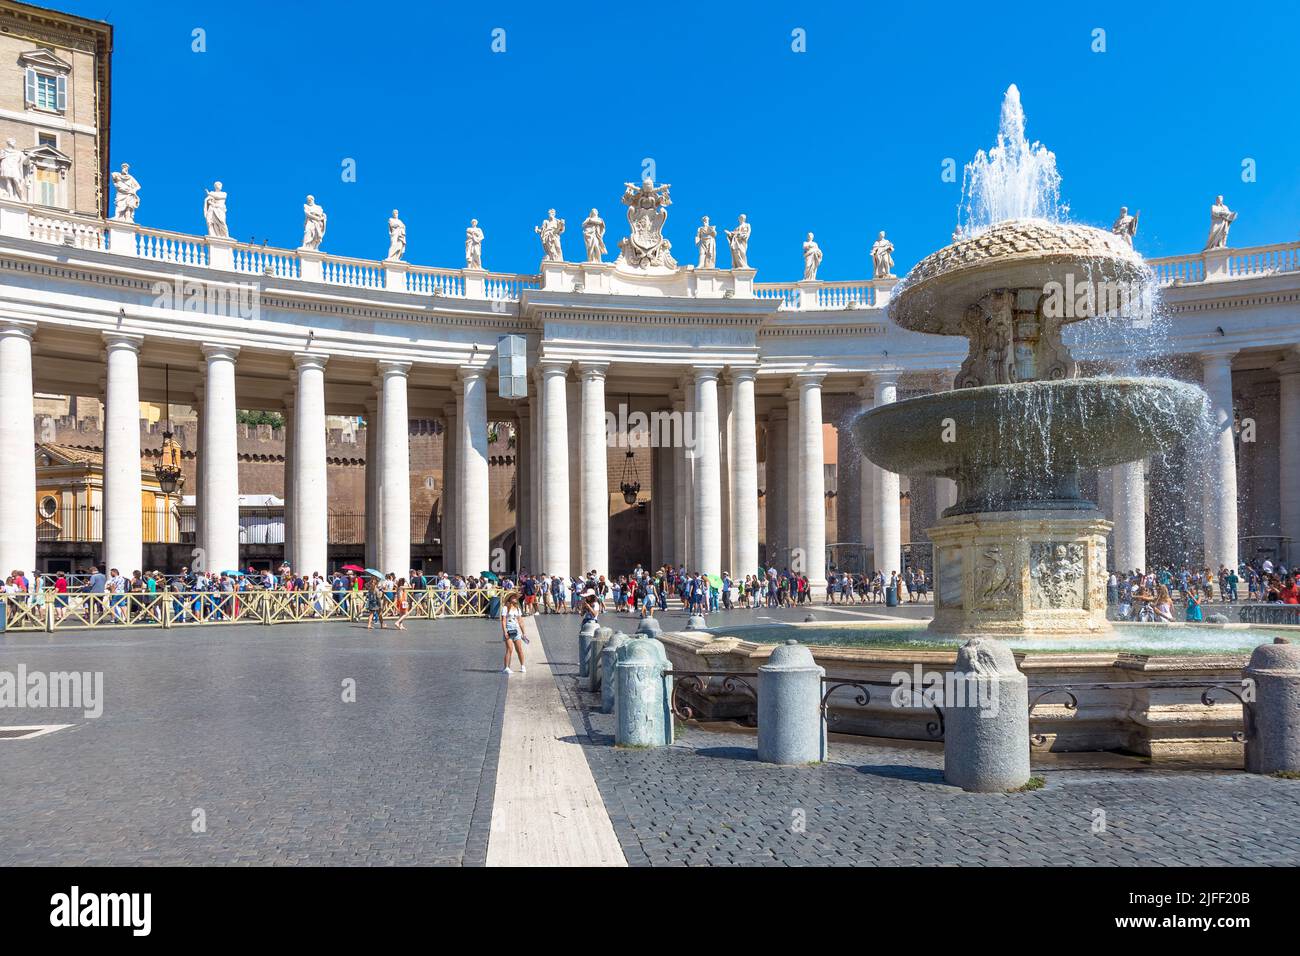 Rom, VATIKAN - 24. AUGUST 2018: lange Schlange von Menschen vor der St. Peter Basilika Eingang wartet. Konzept für overtourism und Masse - Tourismus Stockfoto